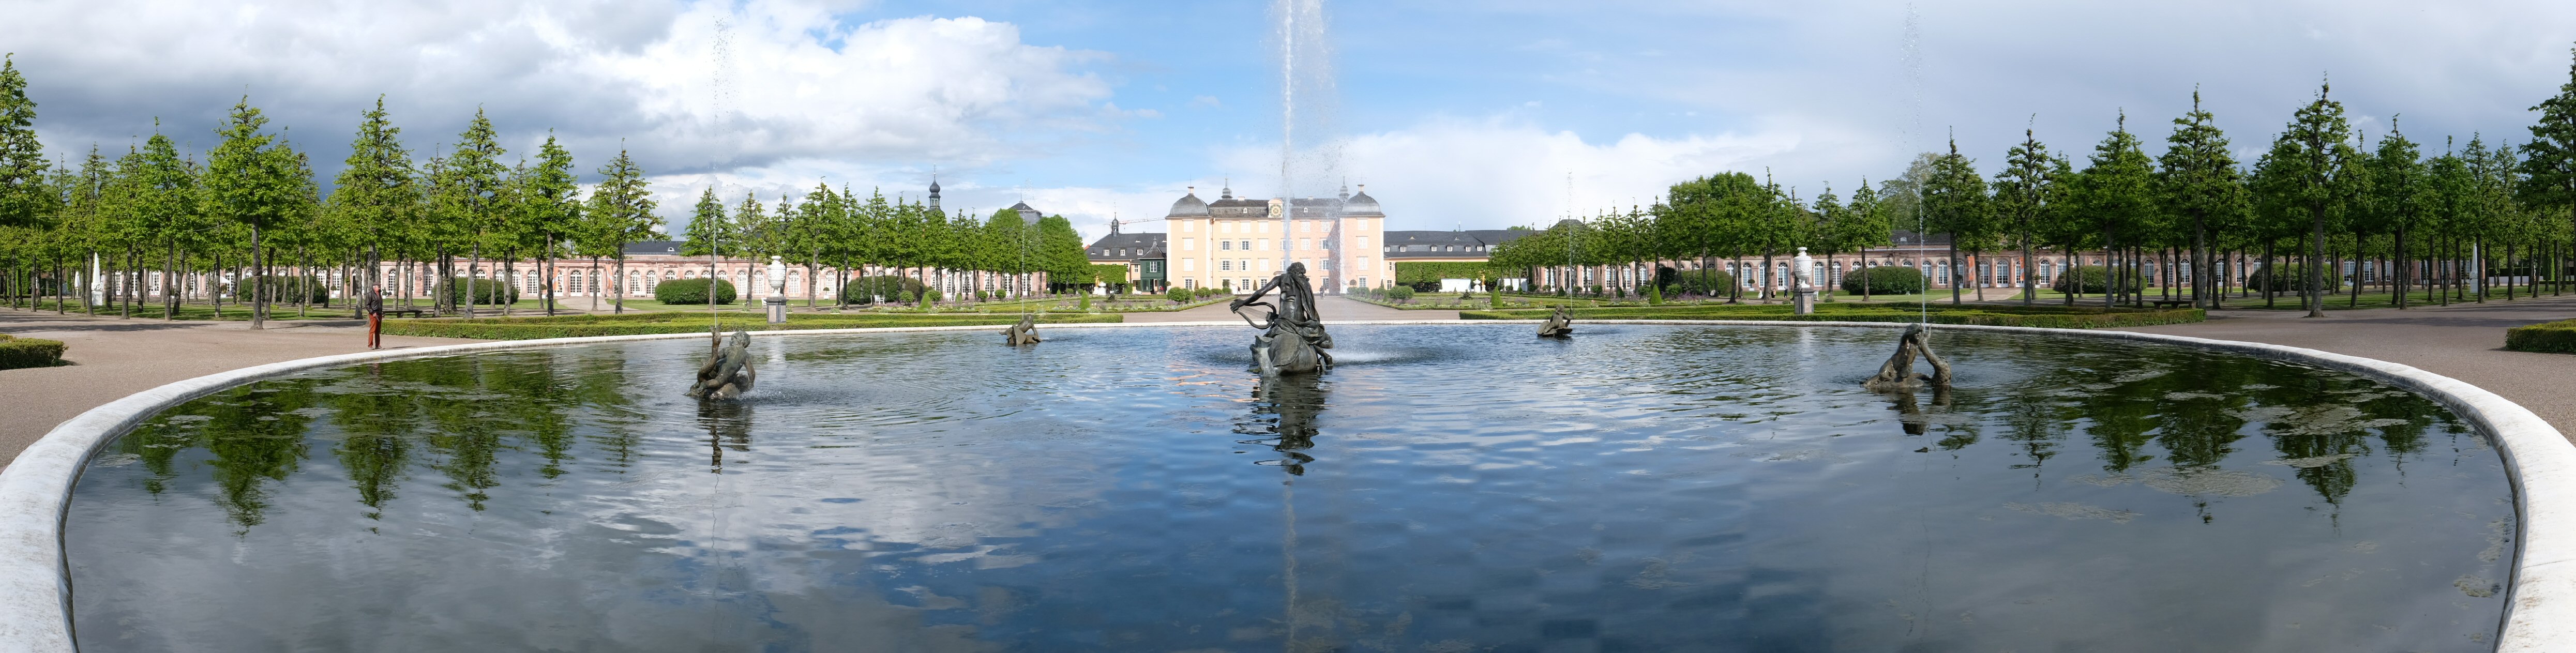 Arionbrunnen